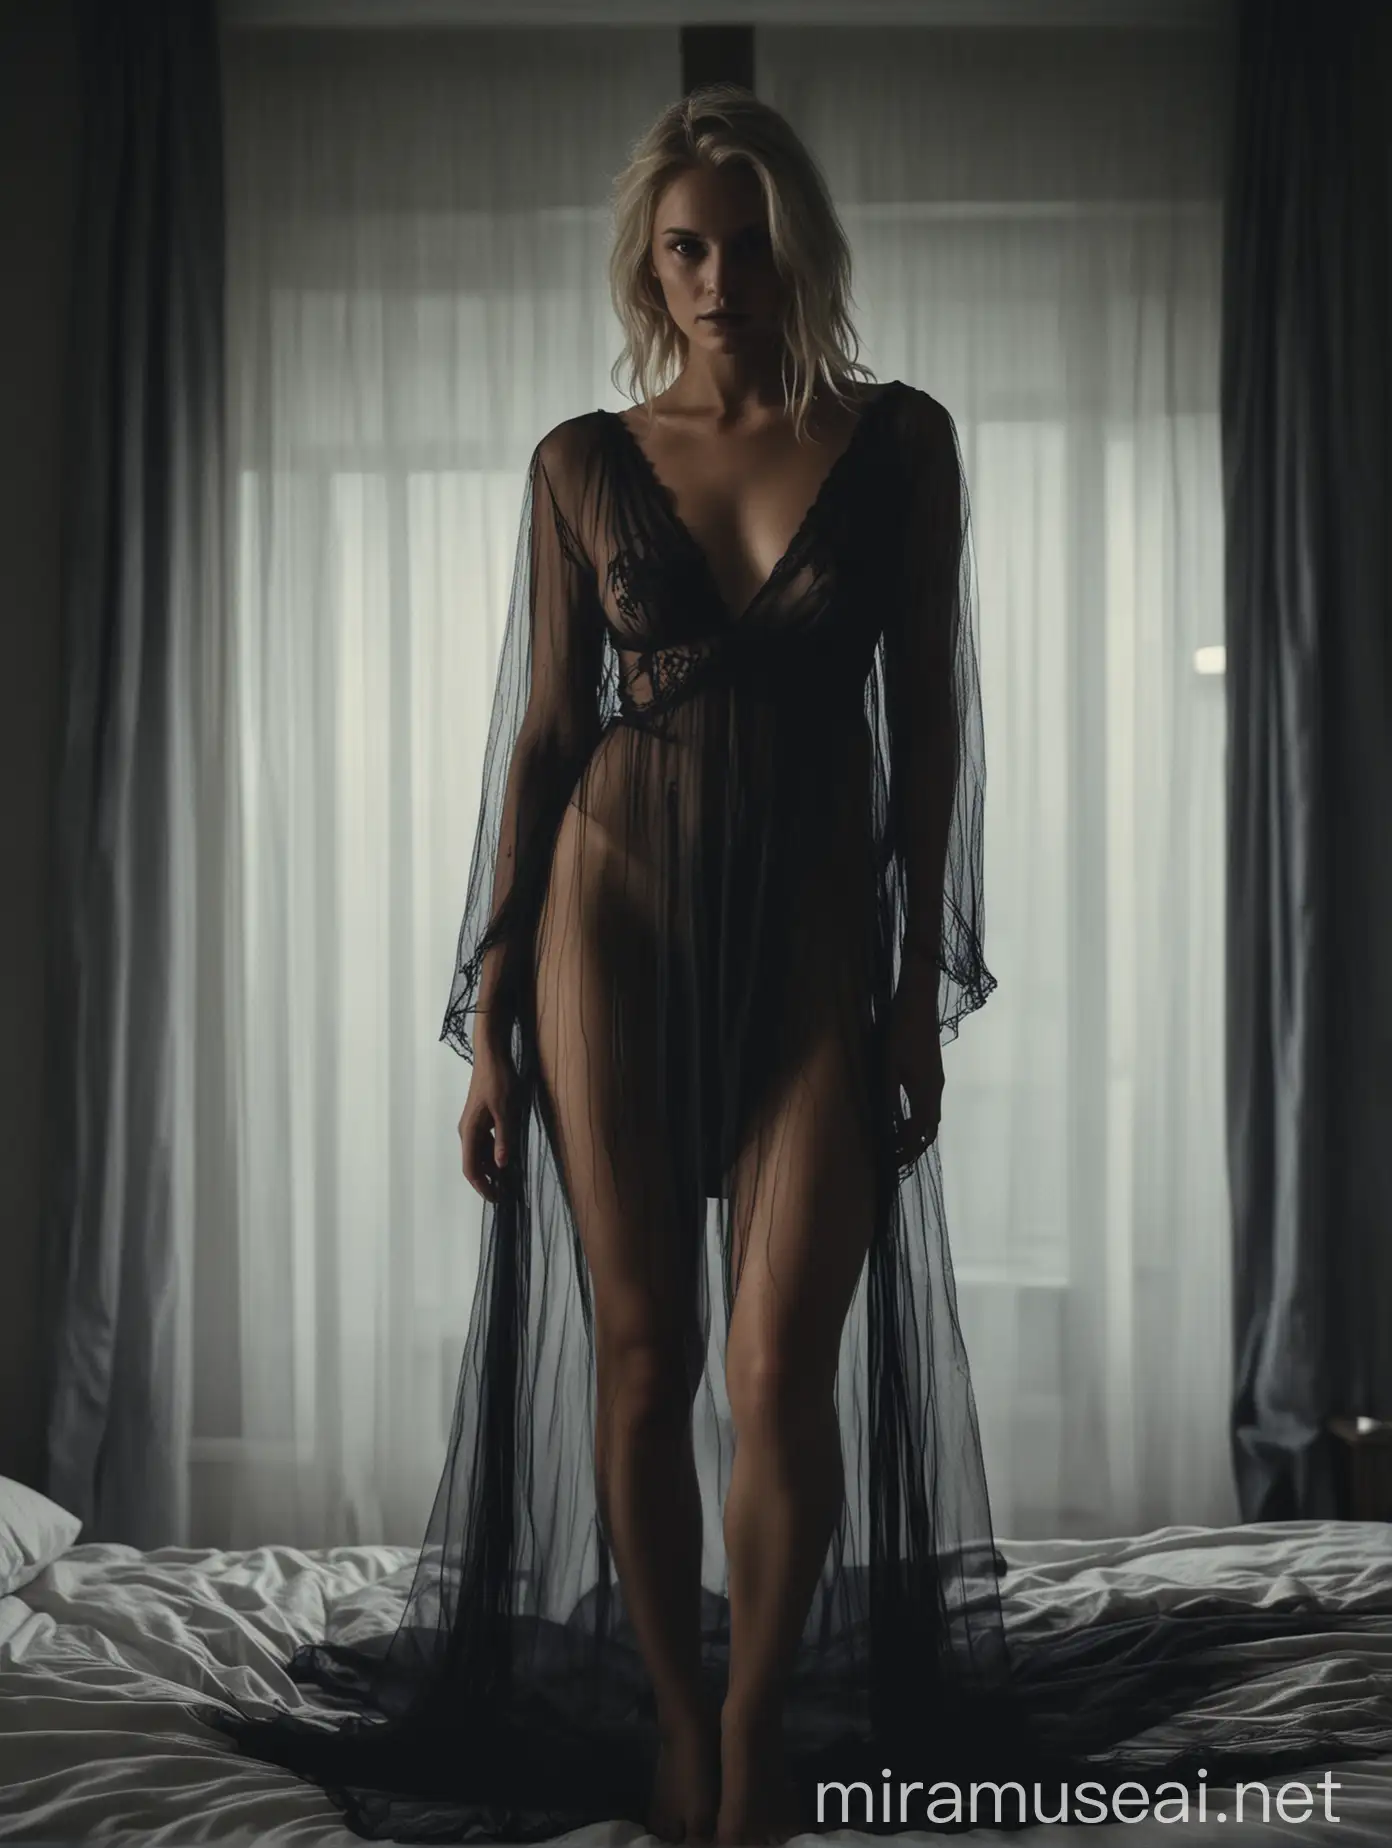 Nordic woman, bedroom, sheer dress, sexy, cinematic, dark, epic